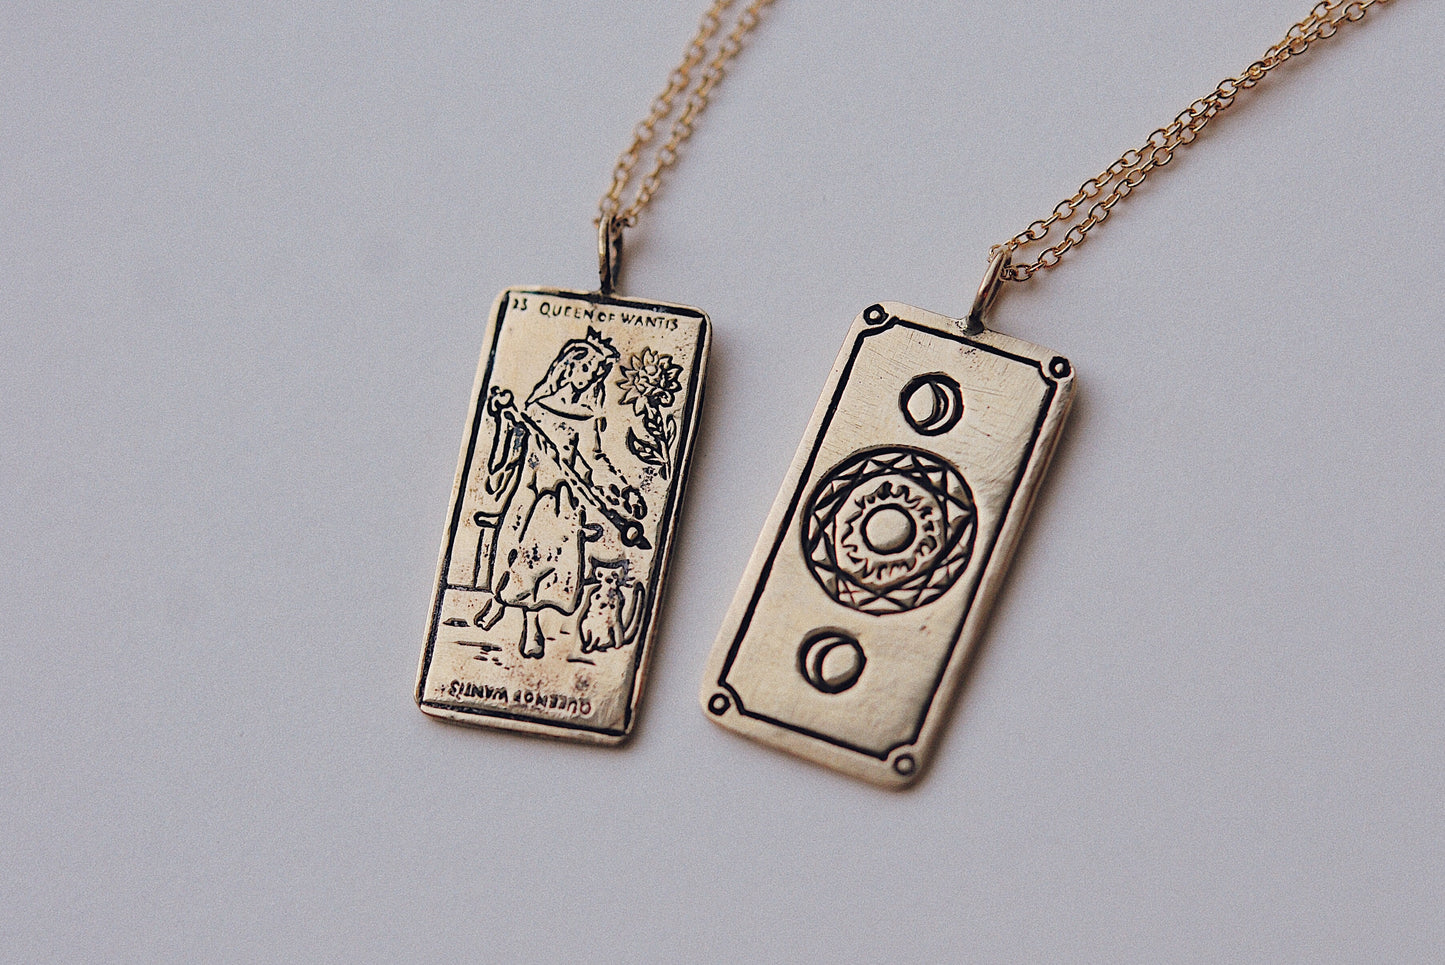 Queen of Wands Tarot Card Necklace